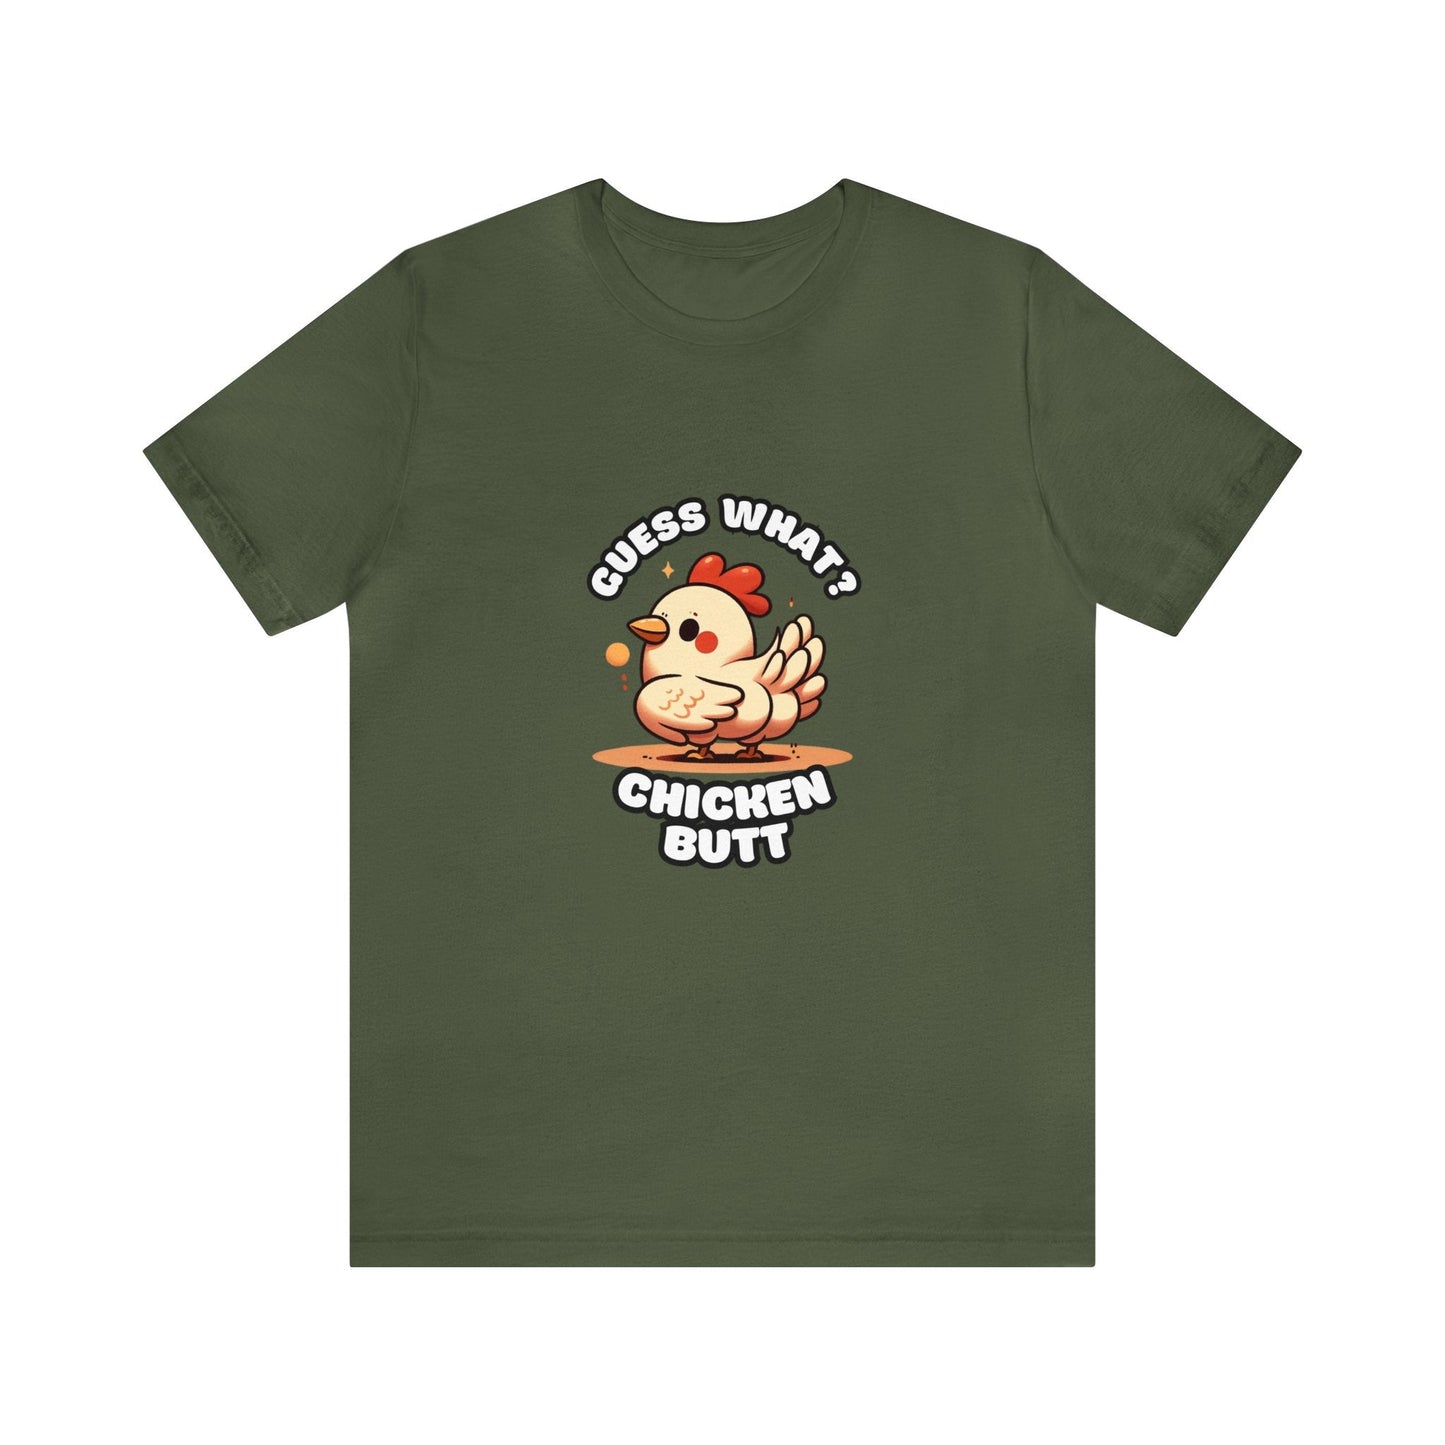 Guess What? Chicken Butt - Chicken T-shirt Military Green / XS